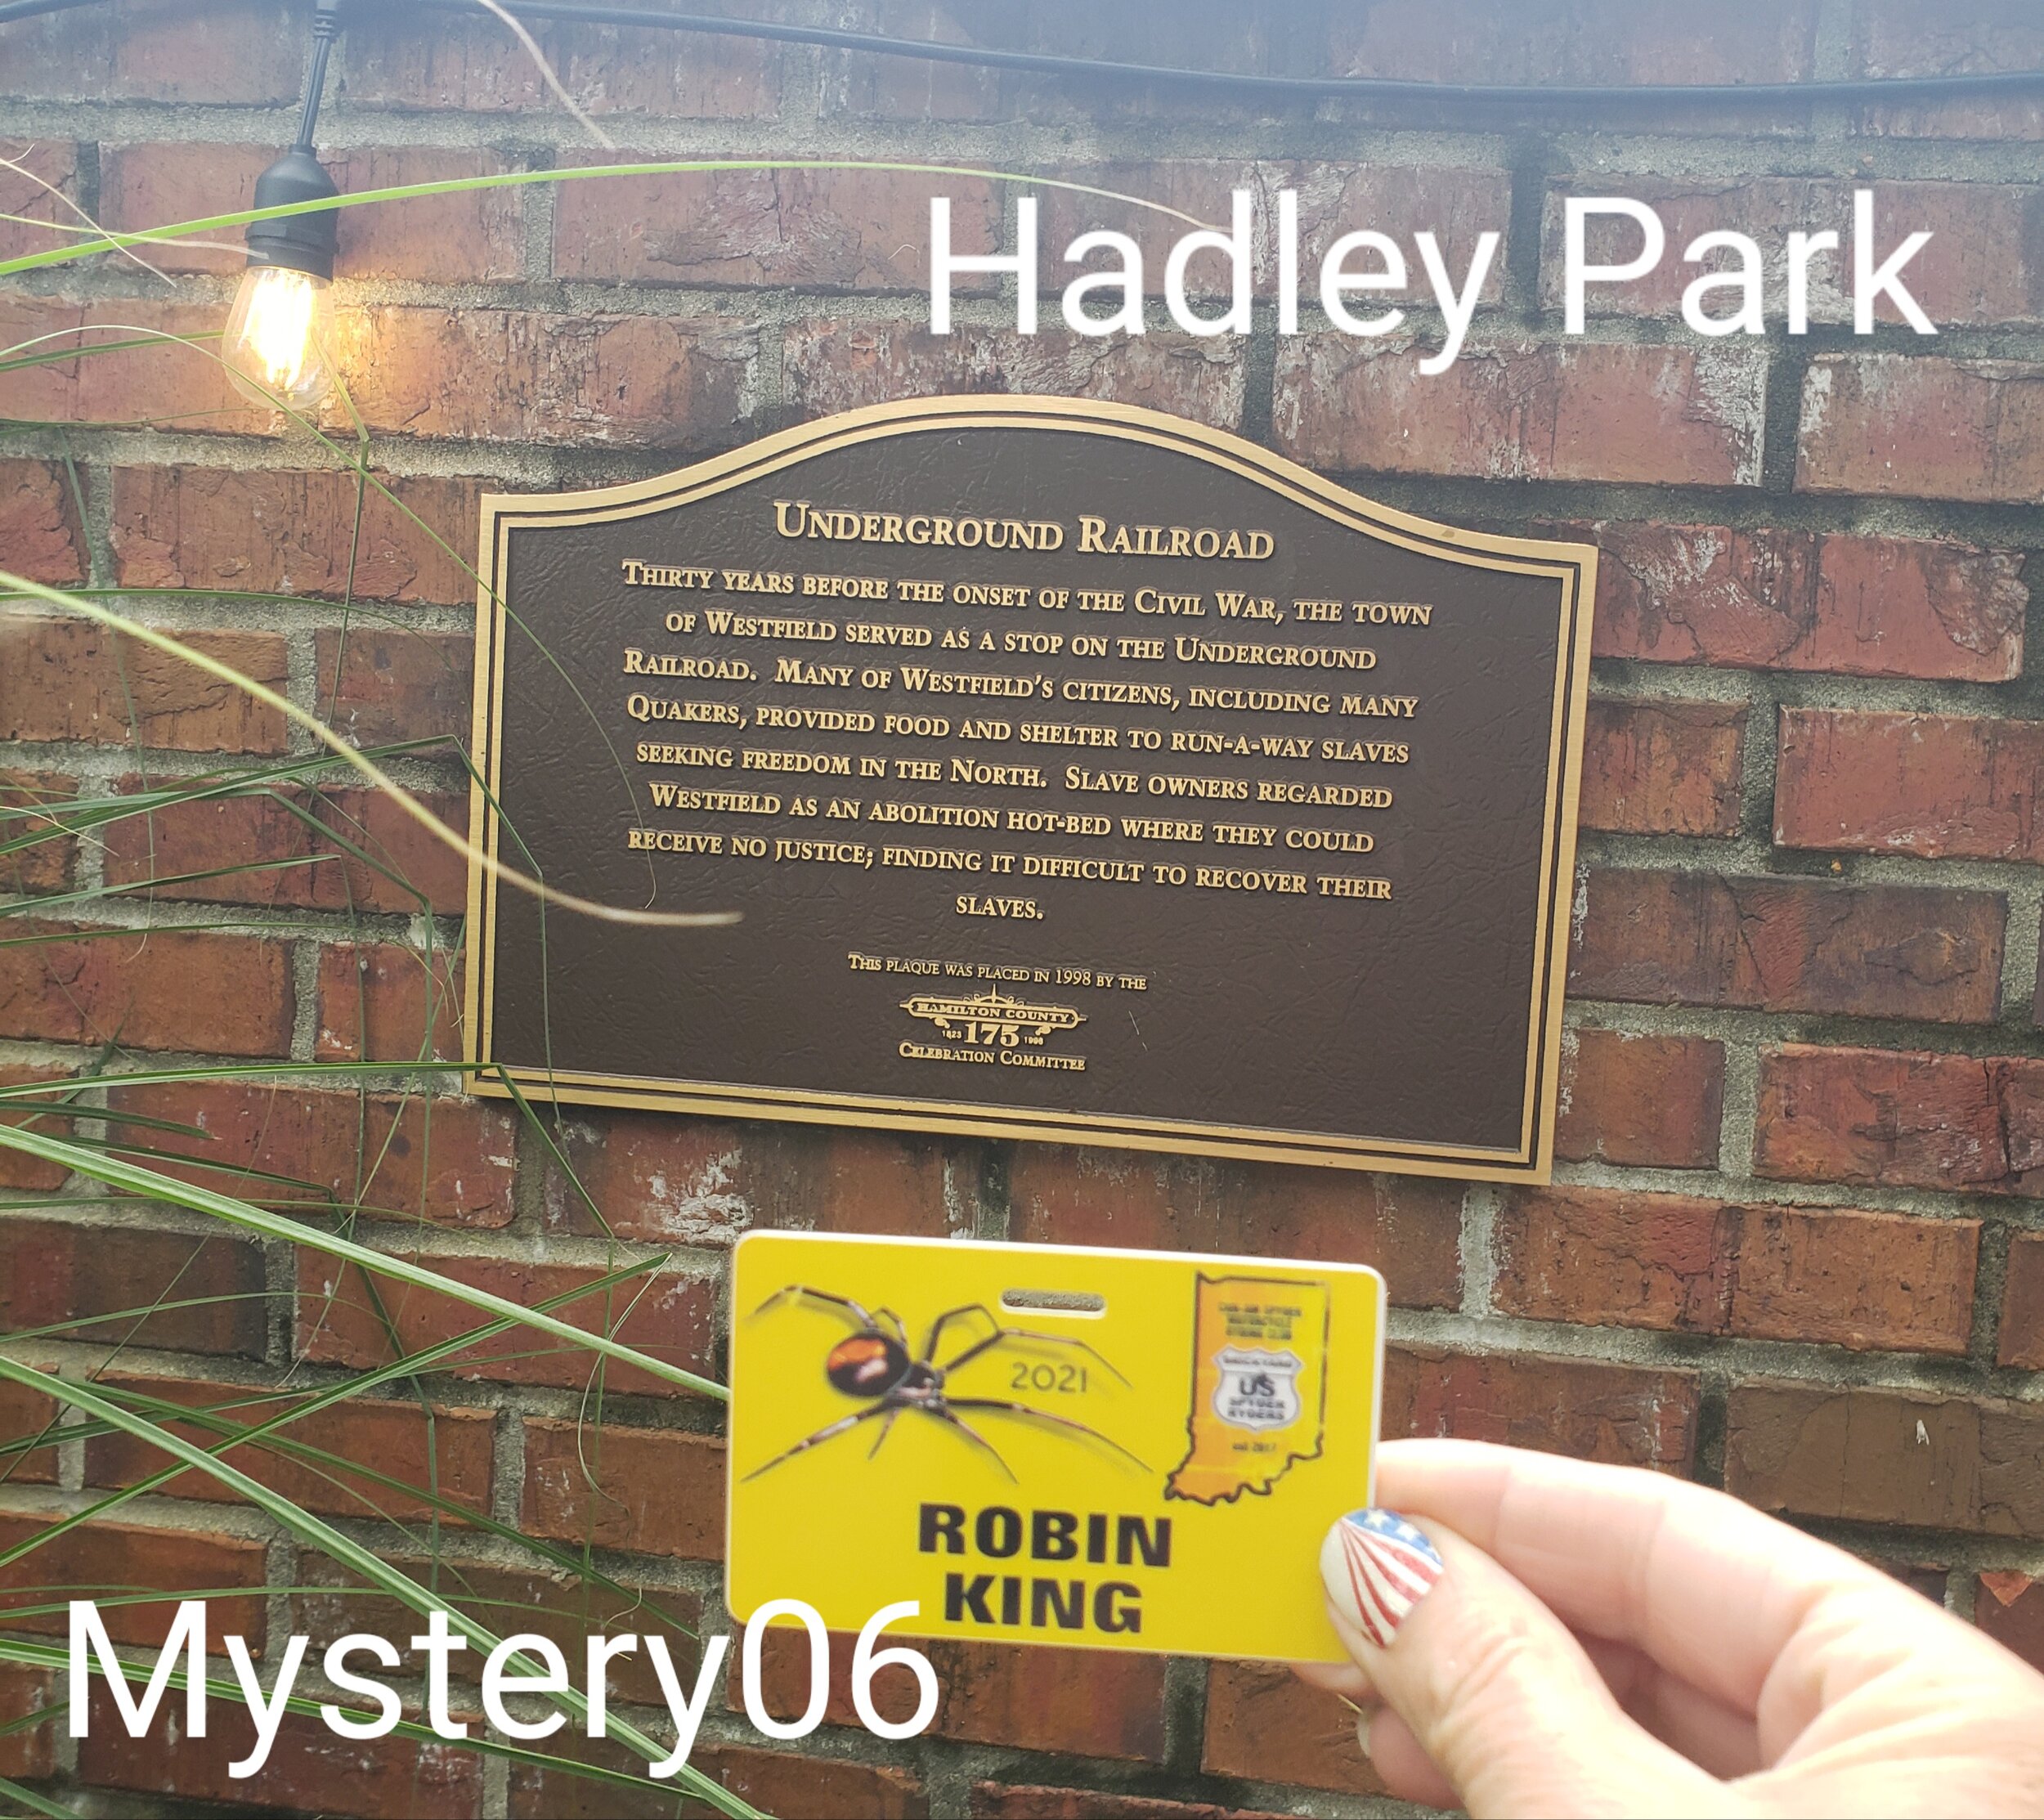 Mystery06 Hadley Park.jpg